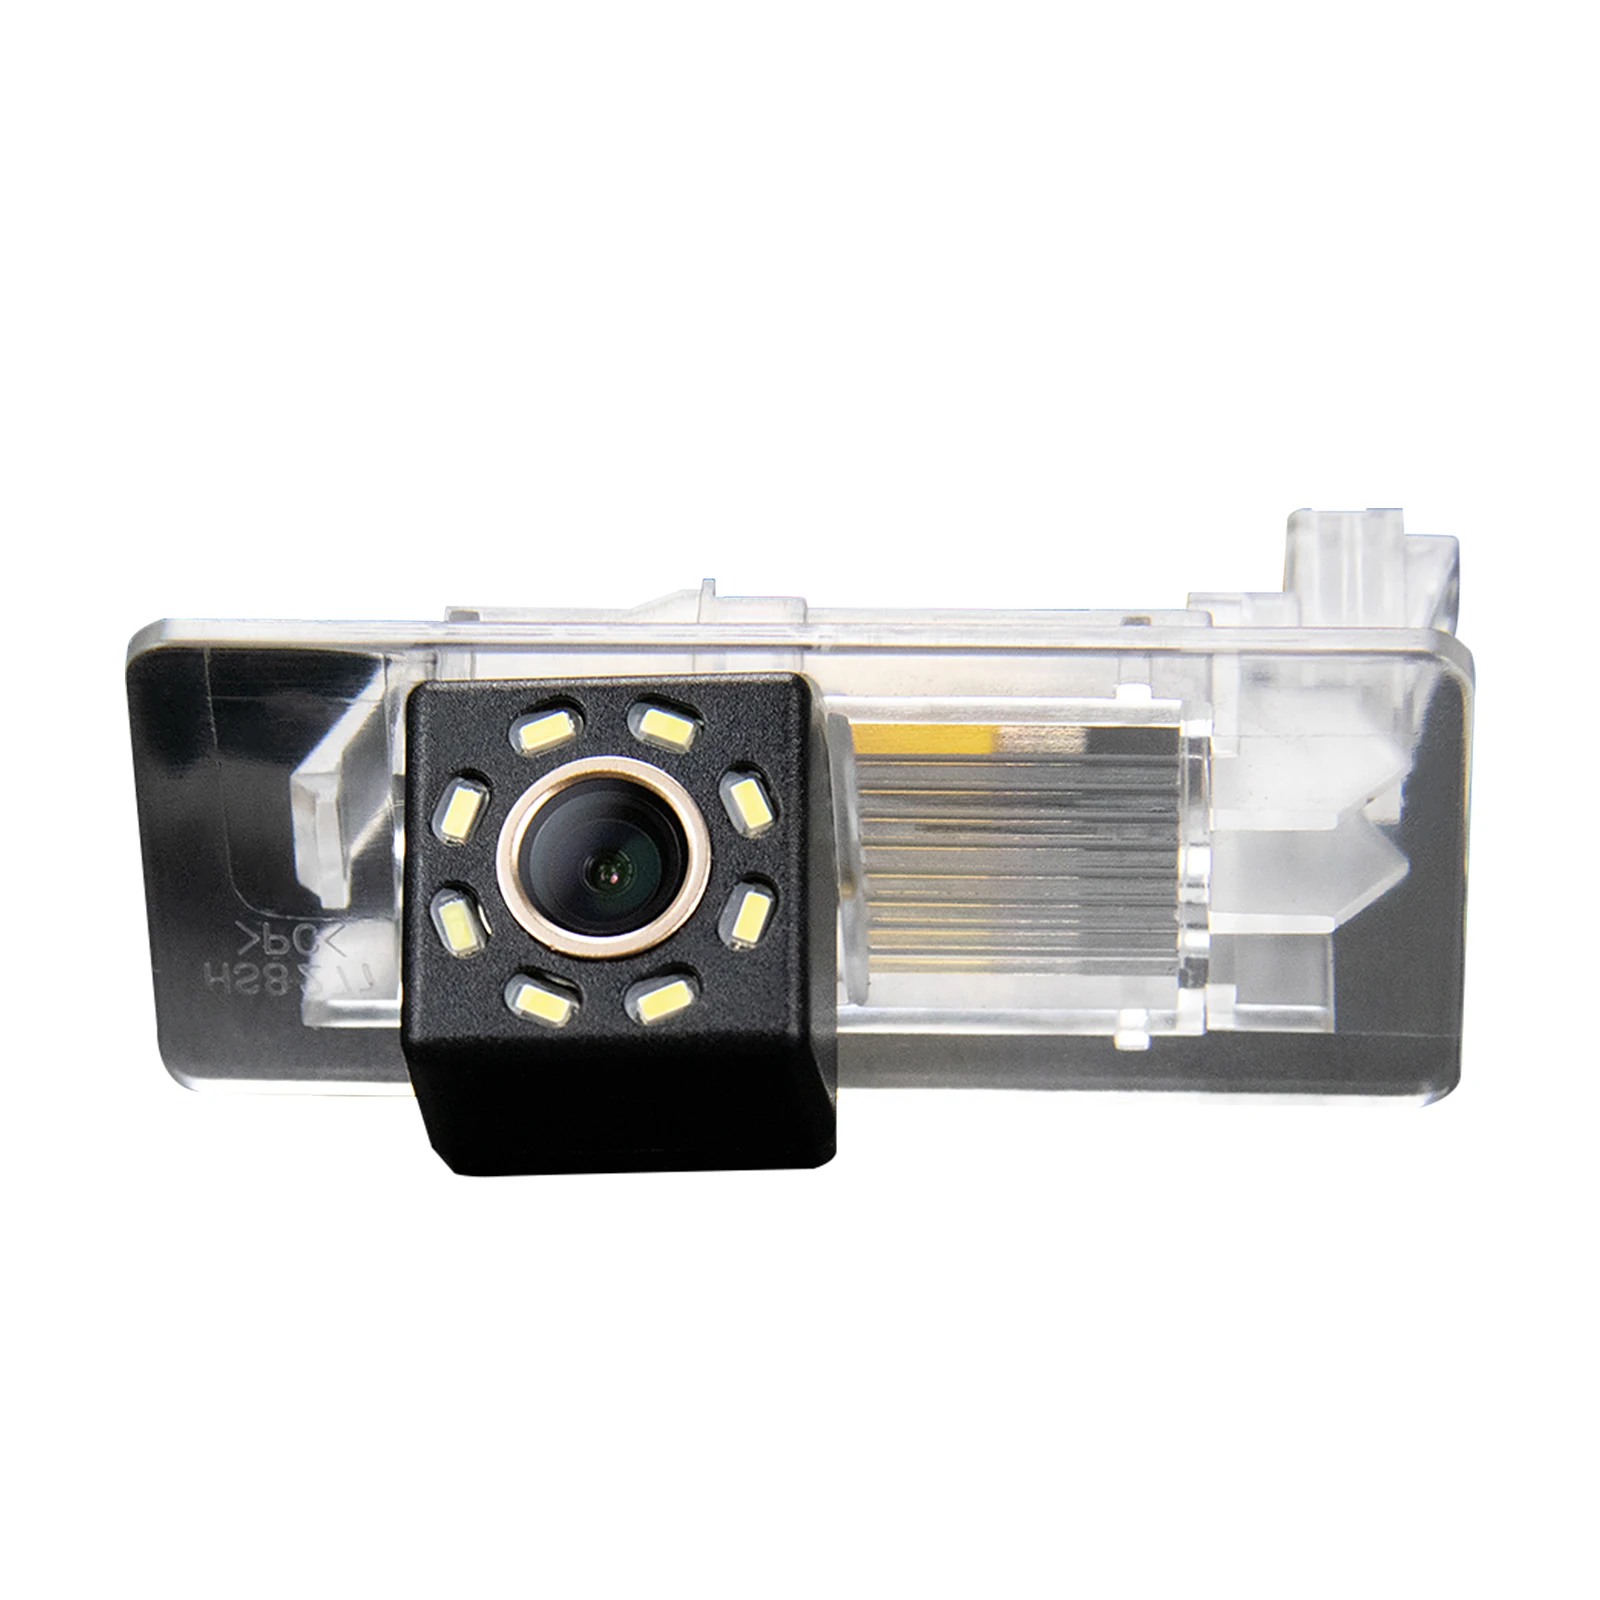 

HD Rear View Camera for Skoda Octavia III A7 (Typ 5E) Wagon Sedan MK3 2013~2018 Skoda Yeti 5L 2009~2016 Skoda Superb Rapid 2014+